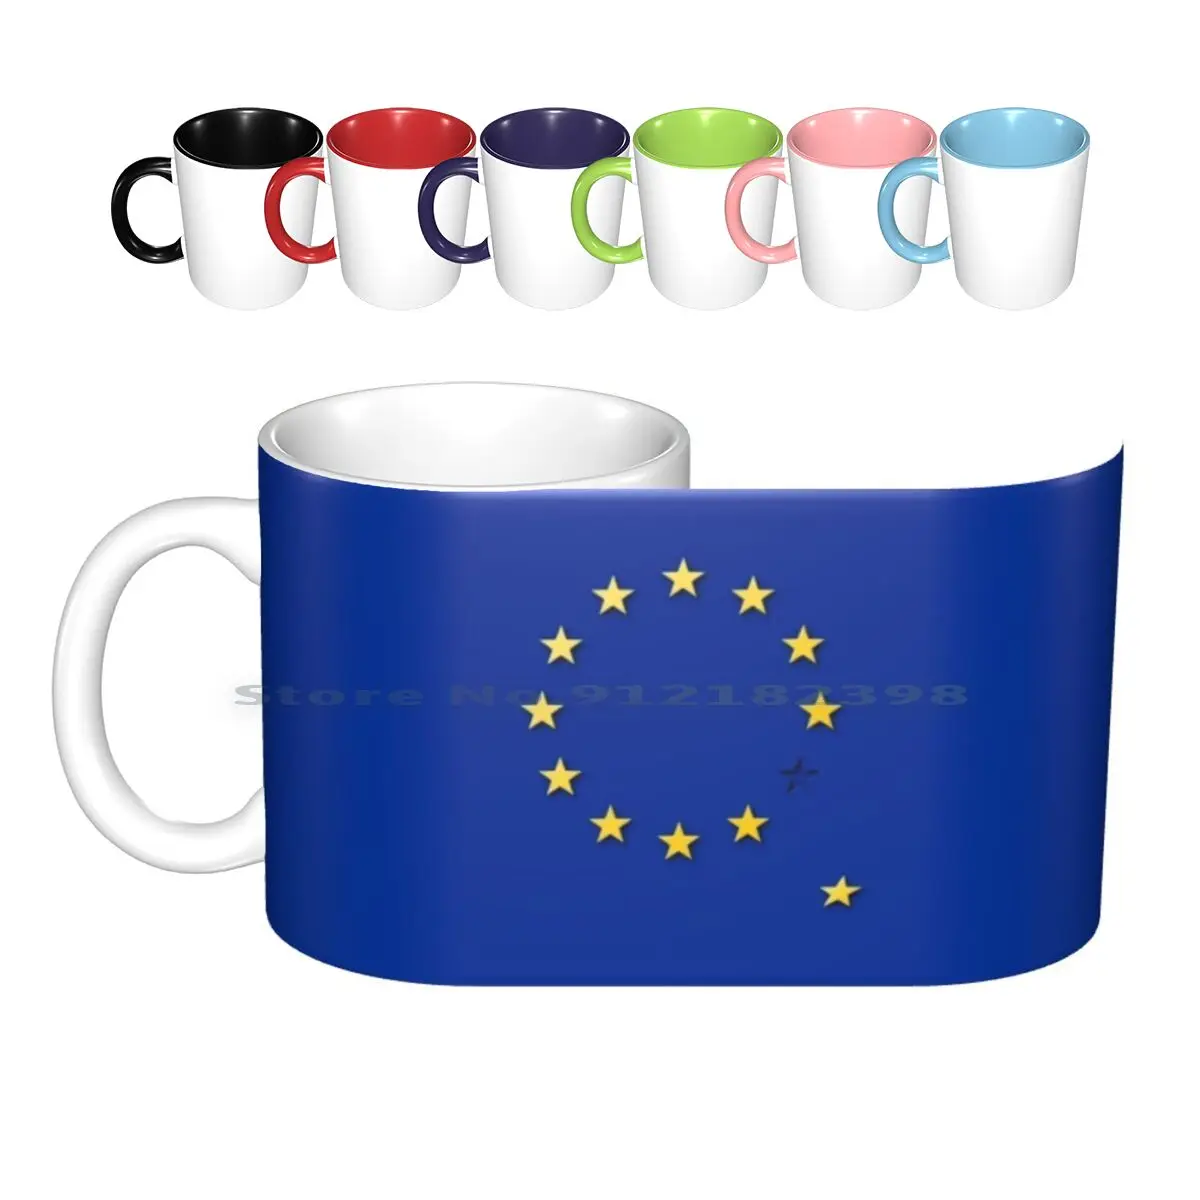 

Керамические кружки с европейской вилкой, с выходом из ЕС, кофейные чашки, Кружка для молока и чая, европейская, Лондонская, Брюссель, Берлин